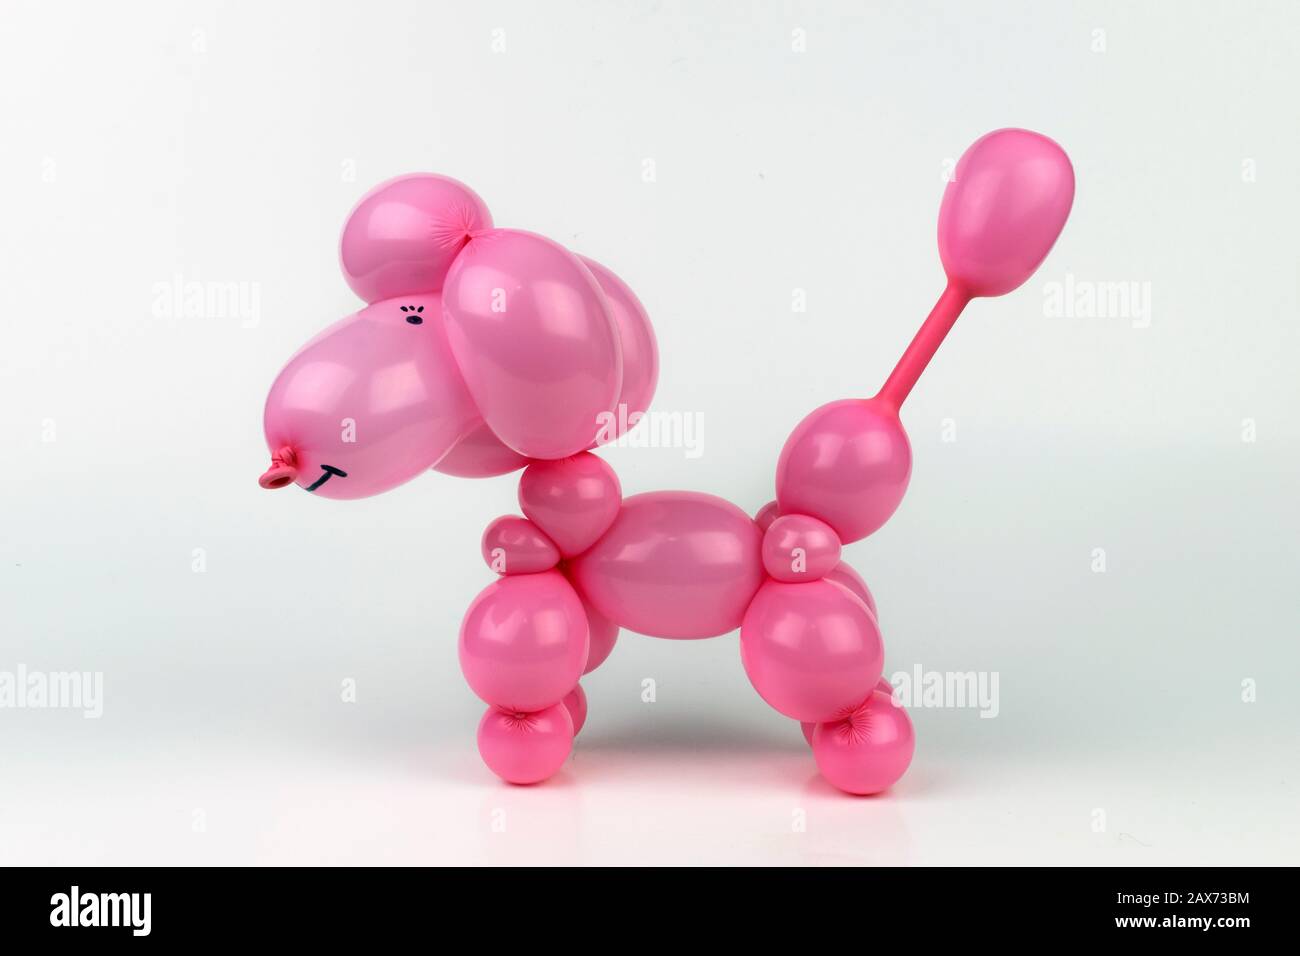 Ein süßer Ballon verdreht pinkfarbenen Pudelhund, der durch Verdrehen von Blasen in einen Latexballon von einem Ballonkünstler gemacht wird oder sich bei einer Geburtstagsparty oder einem anderen Spei klaut Stockfoto